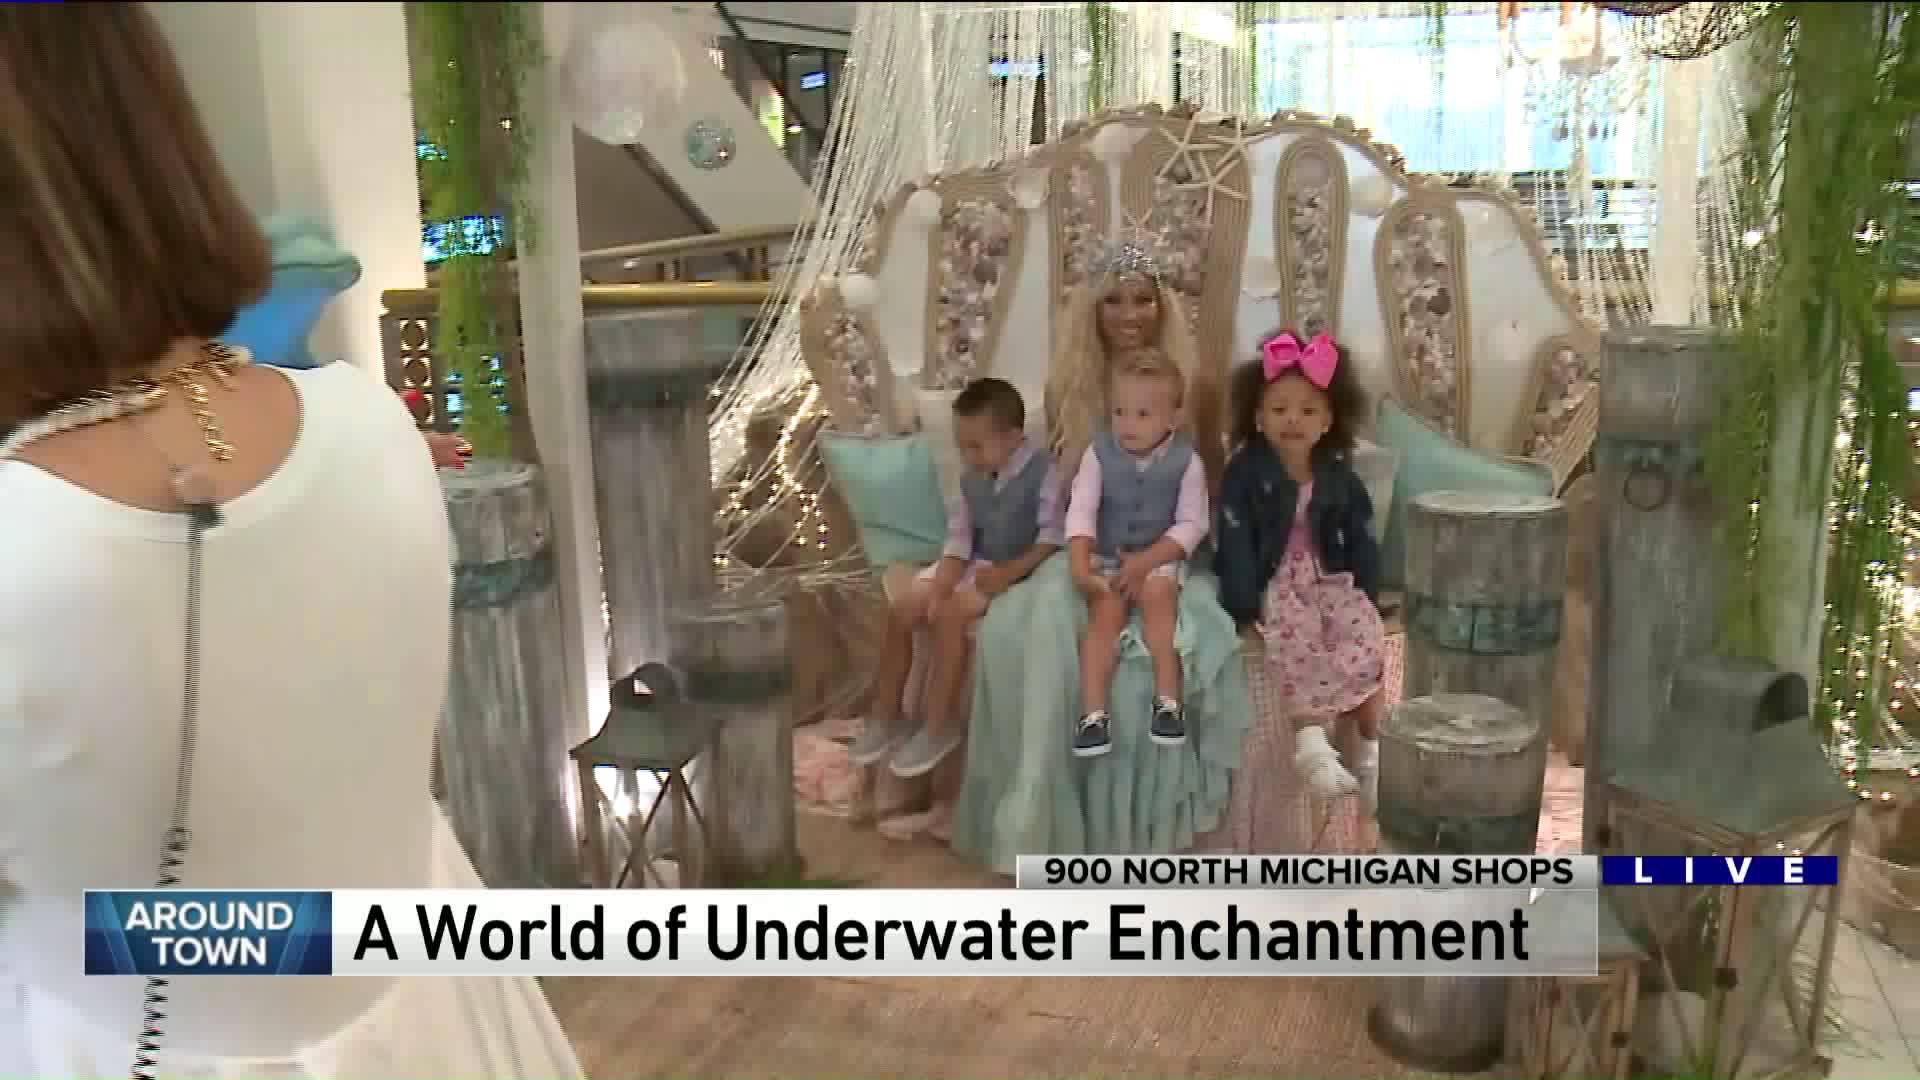 Around Town experiences the Underwater Wonder exhibit at 900 North Michigan Shops